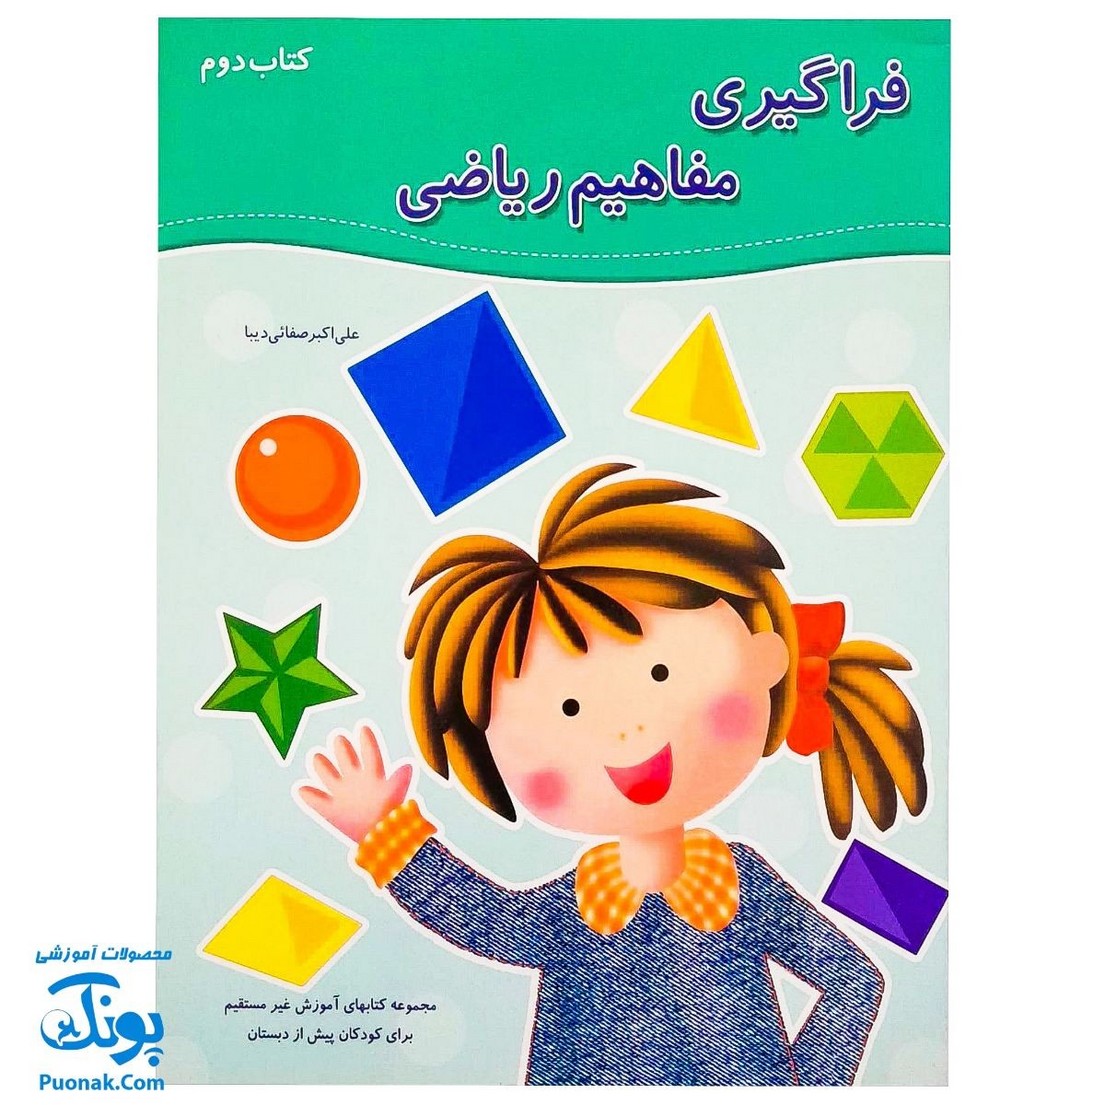 کتاب آموزشی فراگیری مفاهیم ریاضی کتاب دوم (مجموعه کتابهای آموزش غیر مستقیم برای کودکان پیش از دبستان)